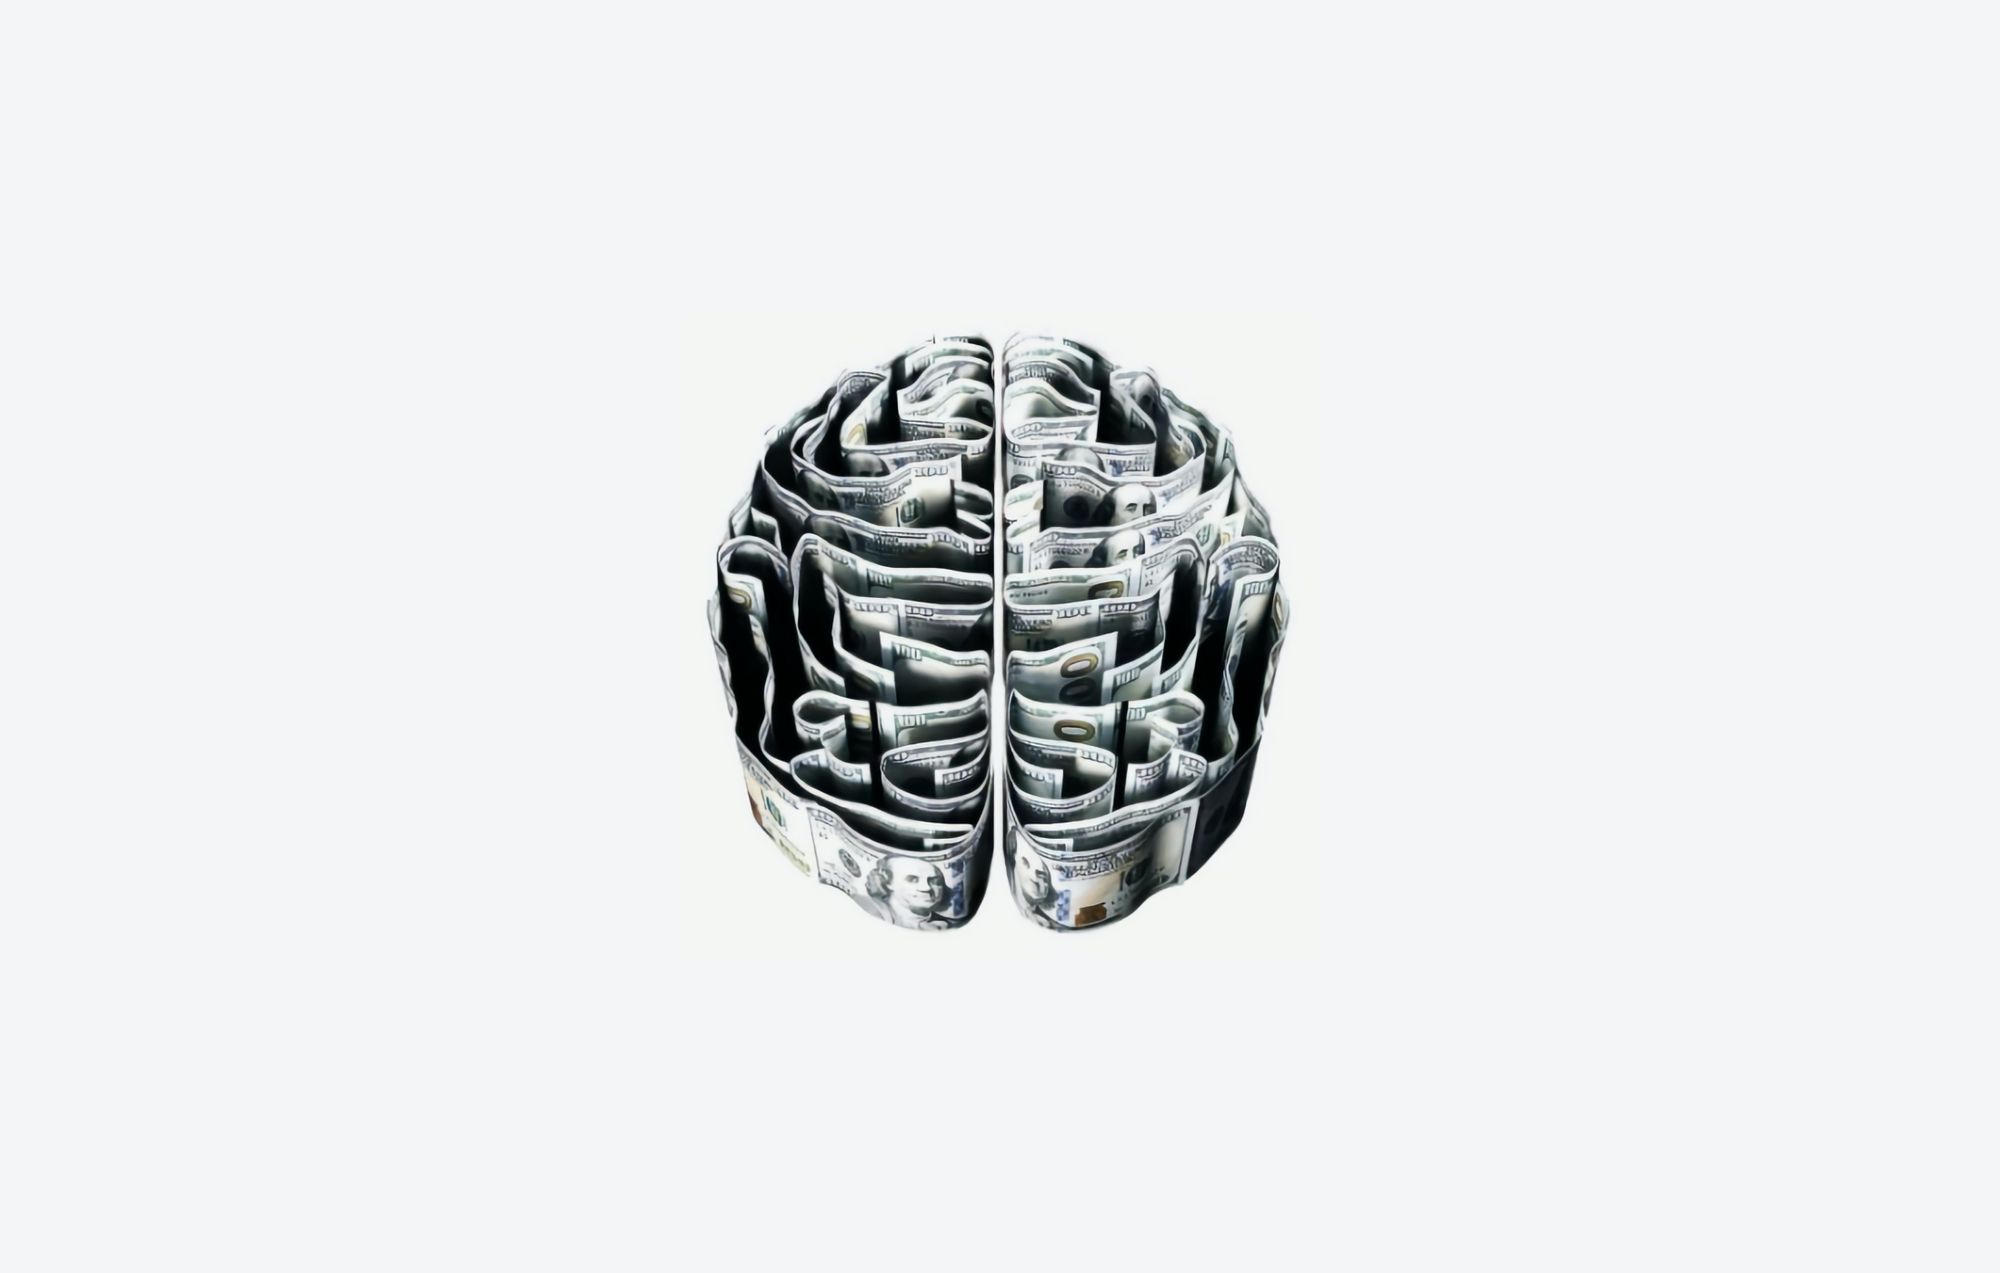 Počítačové mozkové implantáty dostaly od FDA zelenou ke klinickým testům